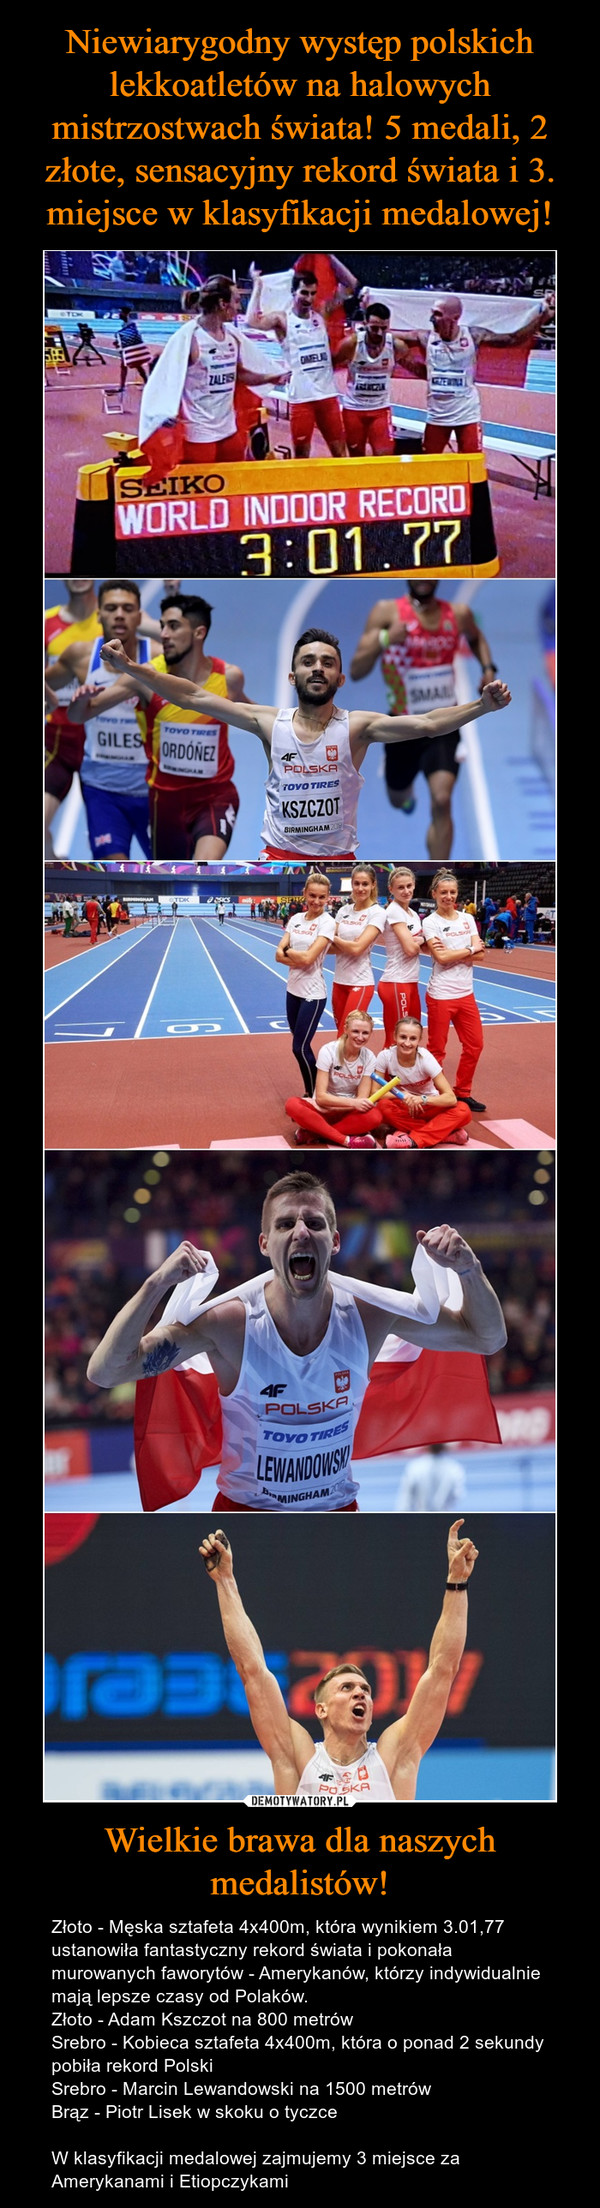 Niewiarygodny występ polskich lekkoatletów na halowych mistrzostwach świata! 5 medali, 2 złote, sensacyjny rekord świata i 3. miejsce w klasyfikacji medalowej! Wielkie brawa dla naszych medalistów!